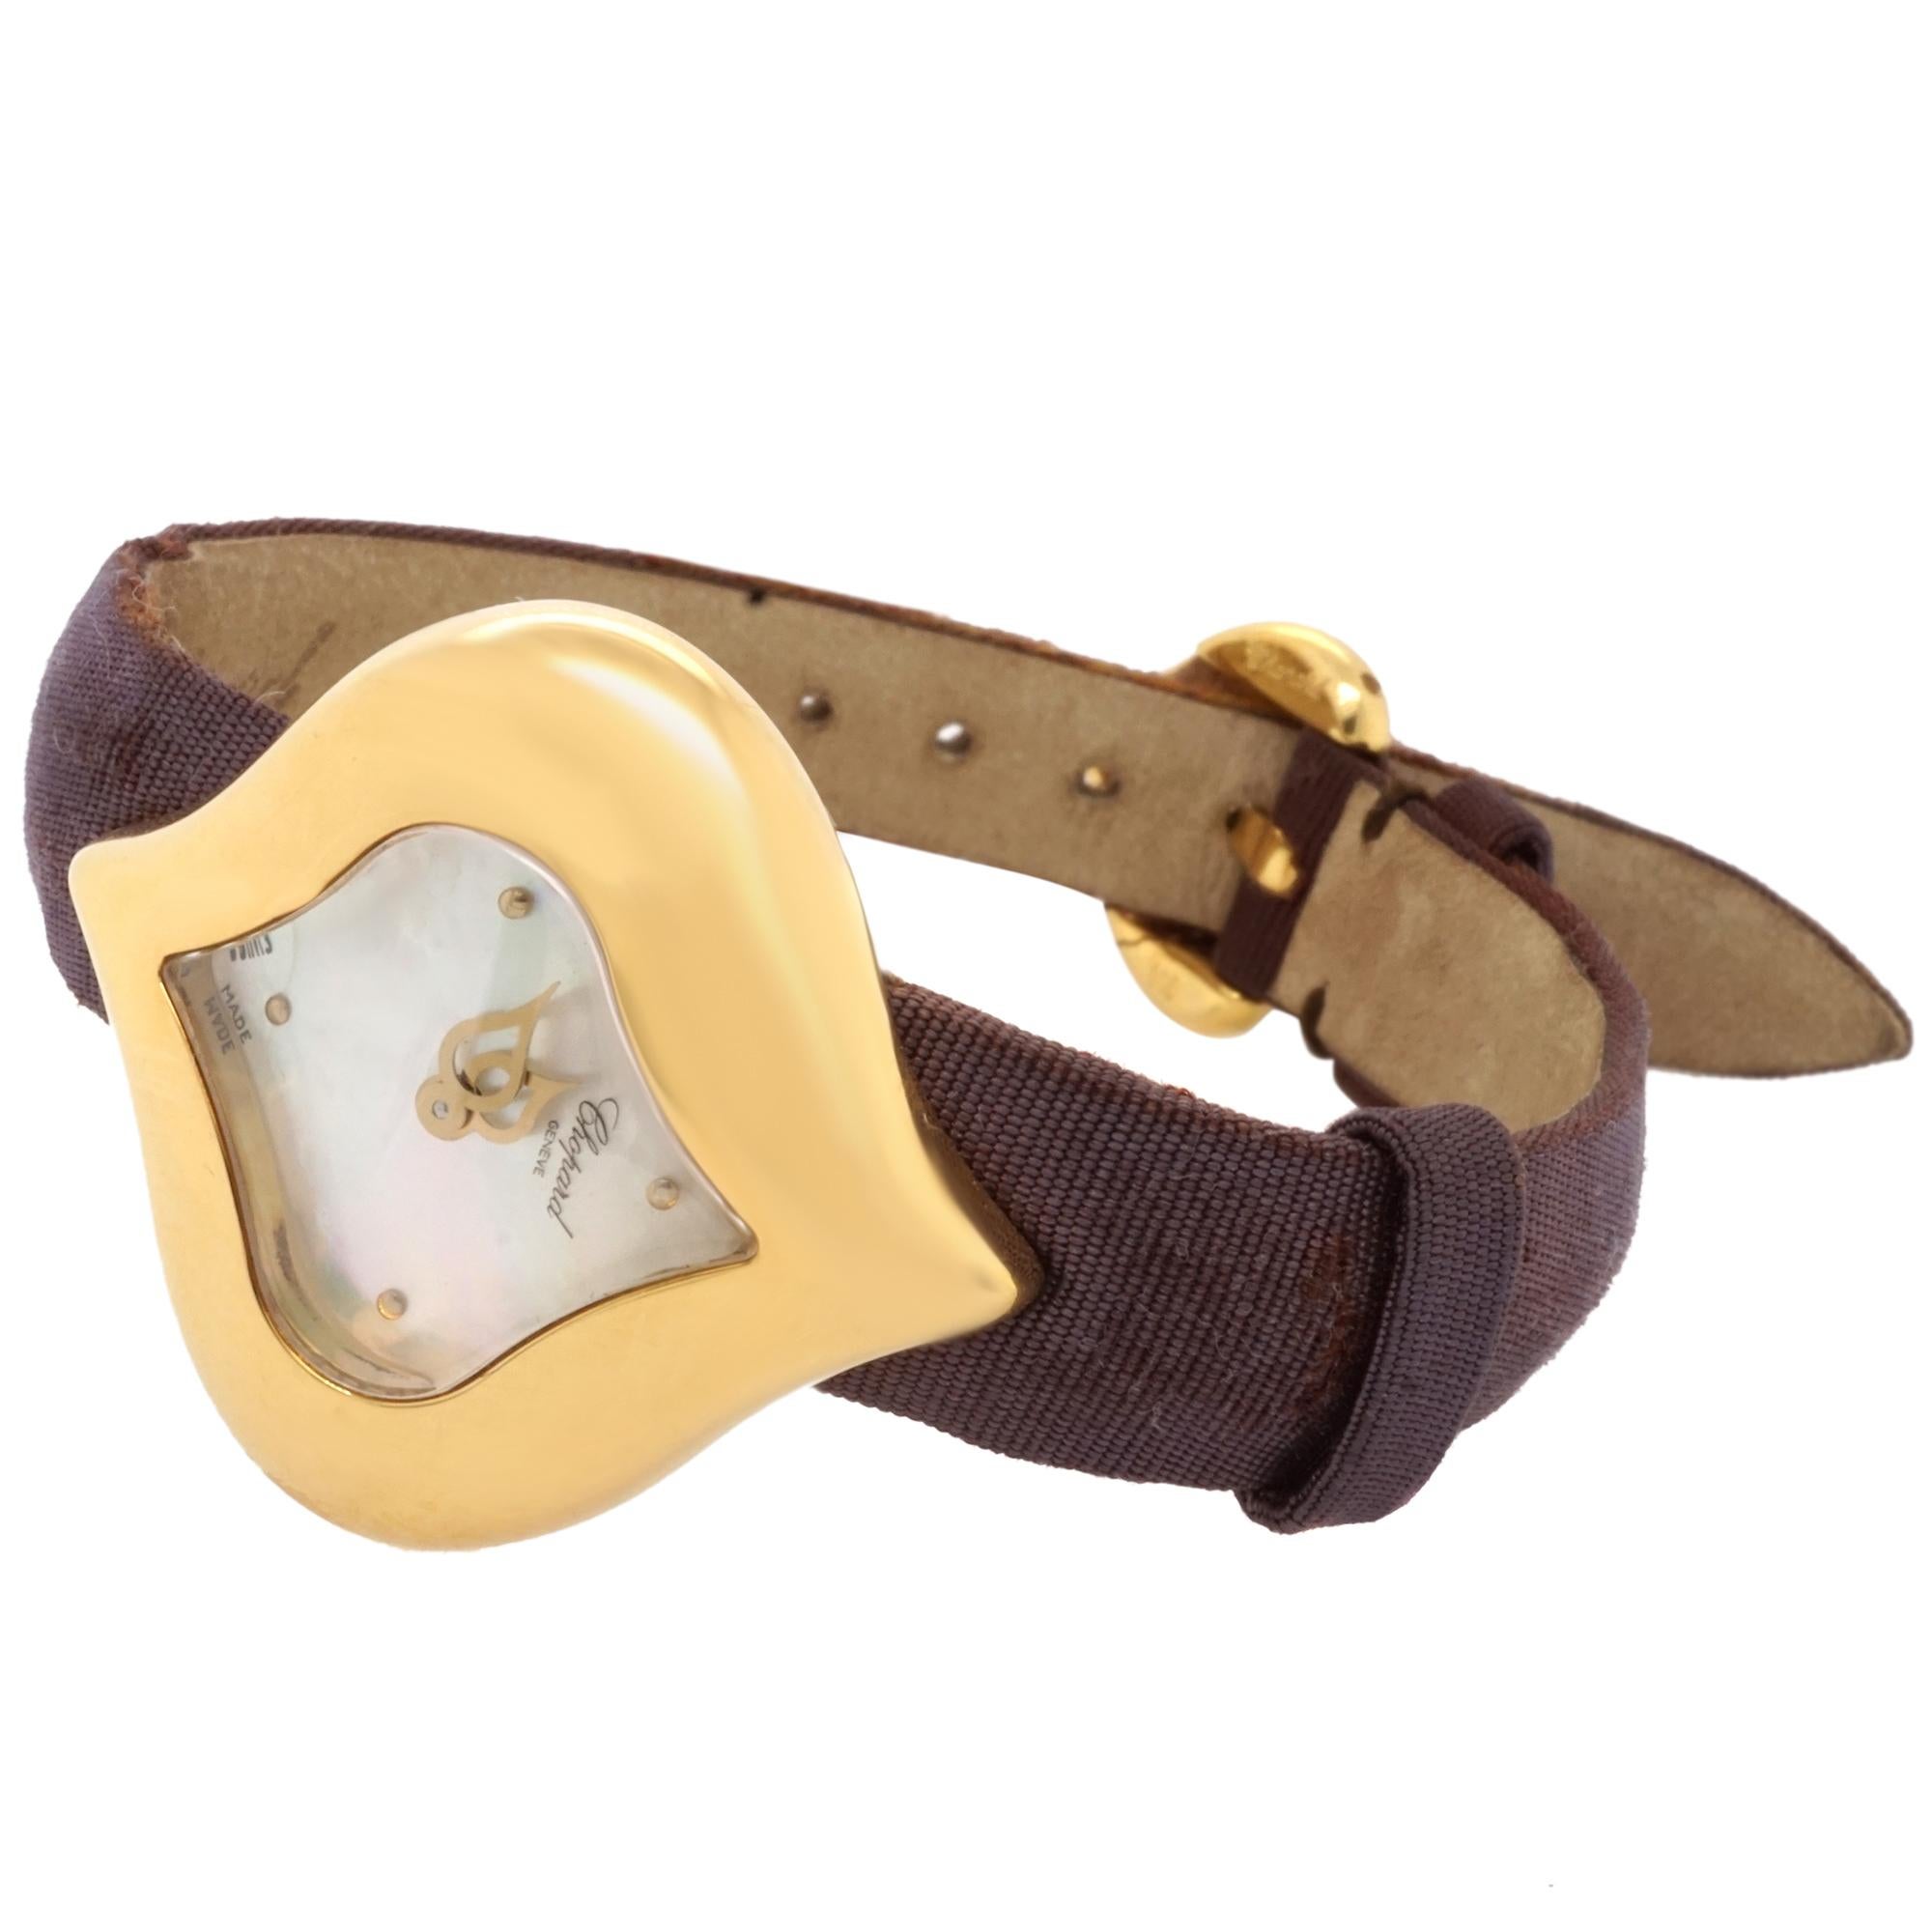 Montre-bracelet Chopard en or jaune 18 carats avec cadran en nacre, signée Chopard Swiss Made. Le bracelet est en tissu marron foncé et violet, soutenu par du cuir estampillé Chopard au verso.  Fermé par un fermoir en or jaune 18 carats Signé